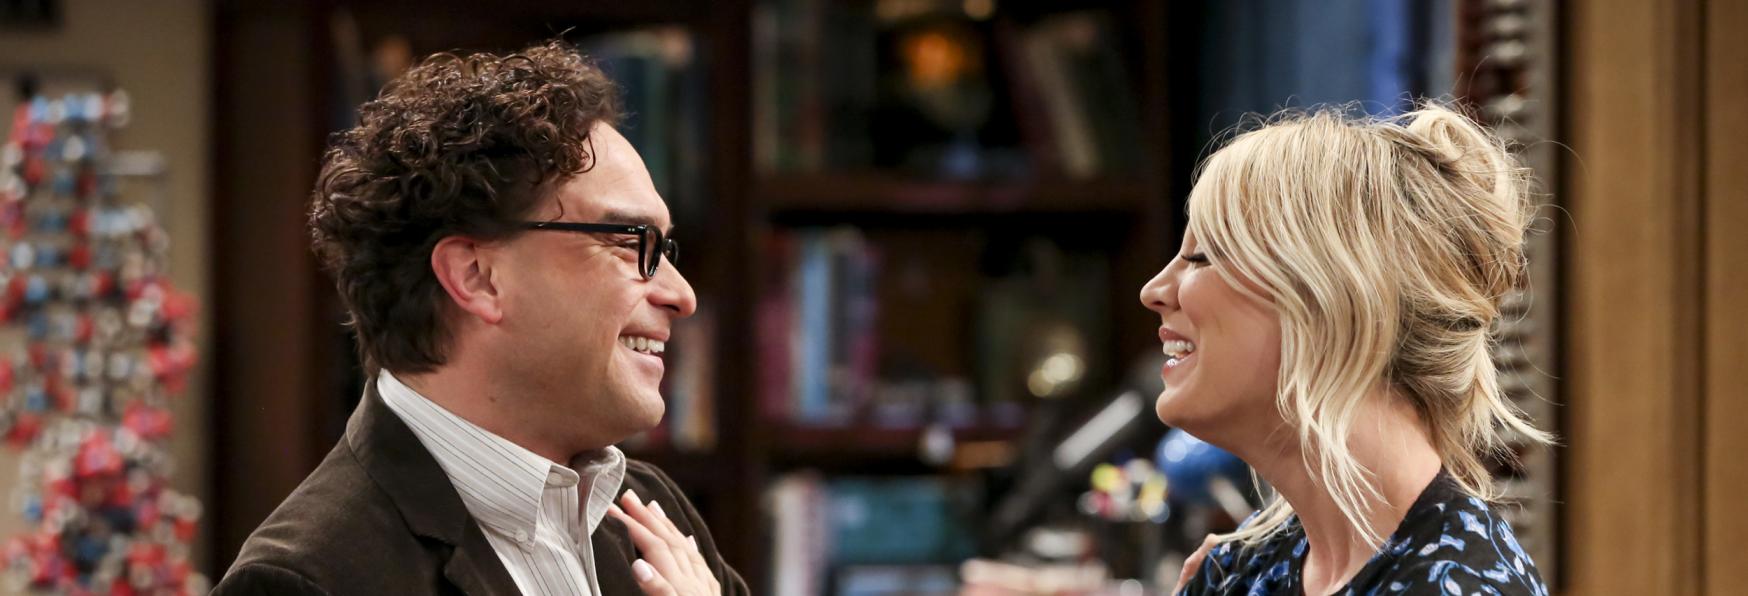 The Big Bang Theory: ecco come è nata la Relazione tra Johnny Galecki e Kaley Cuoco